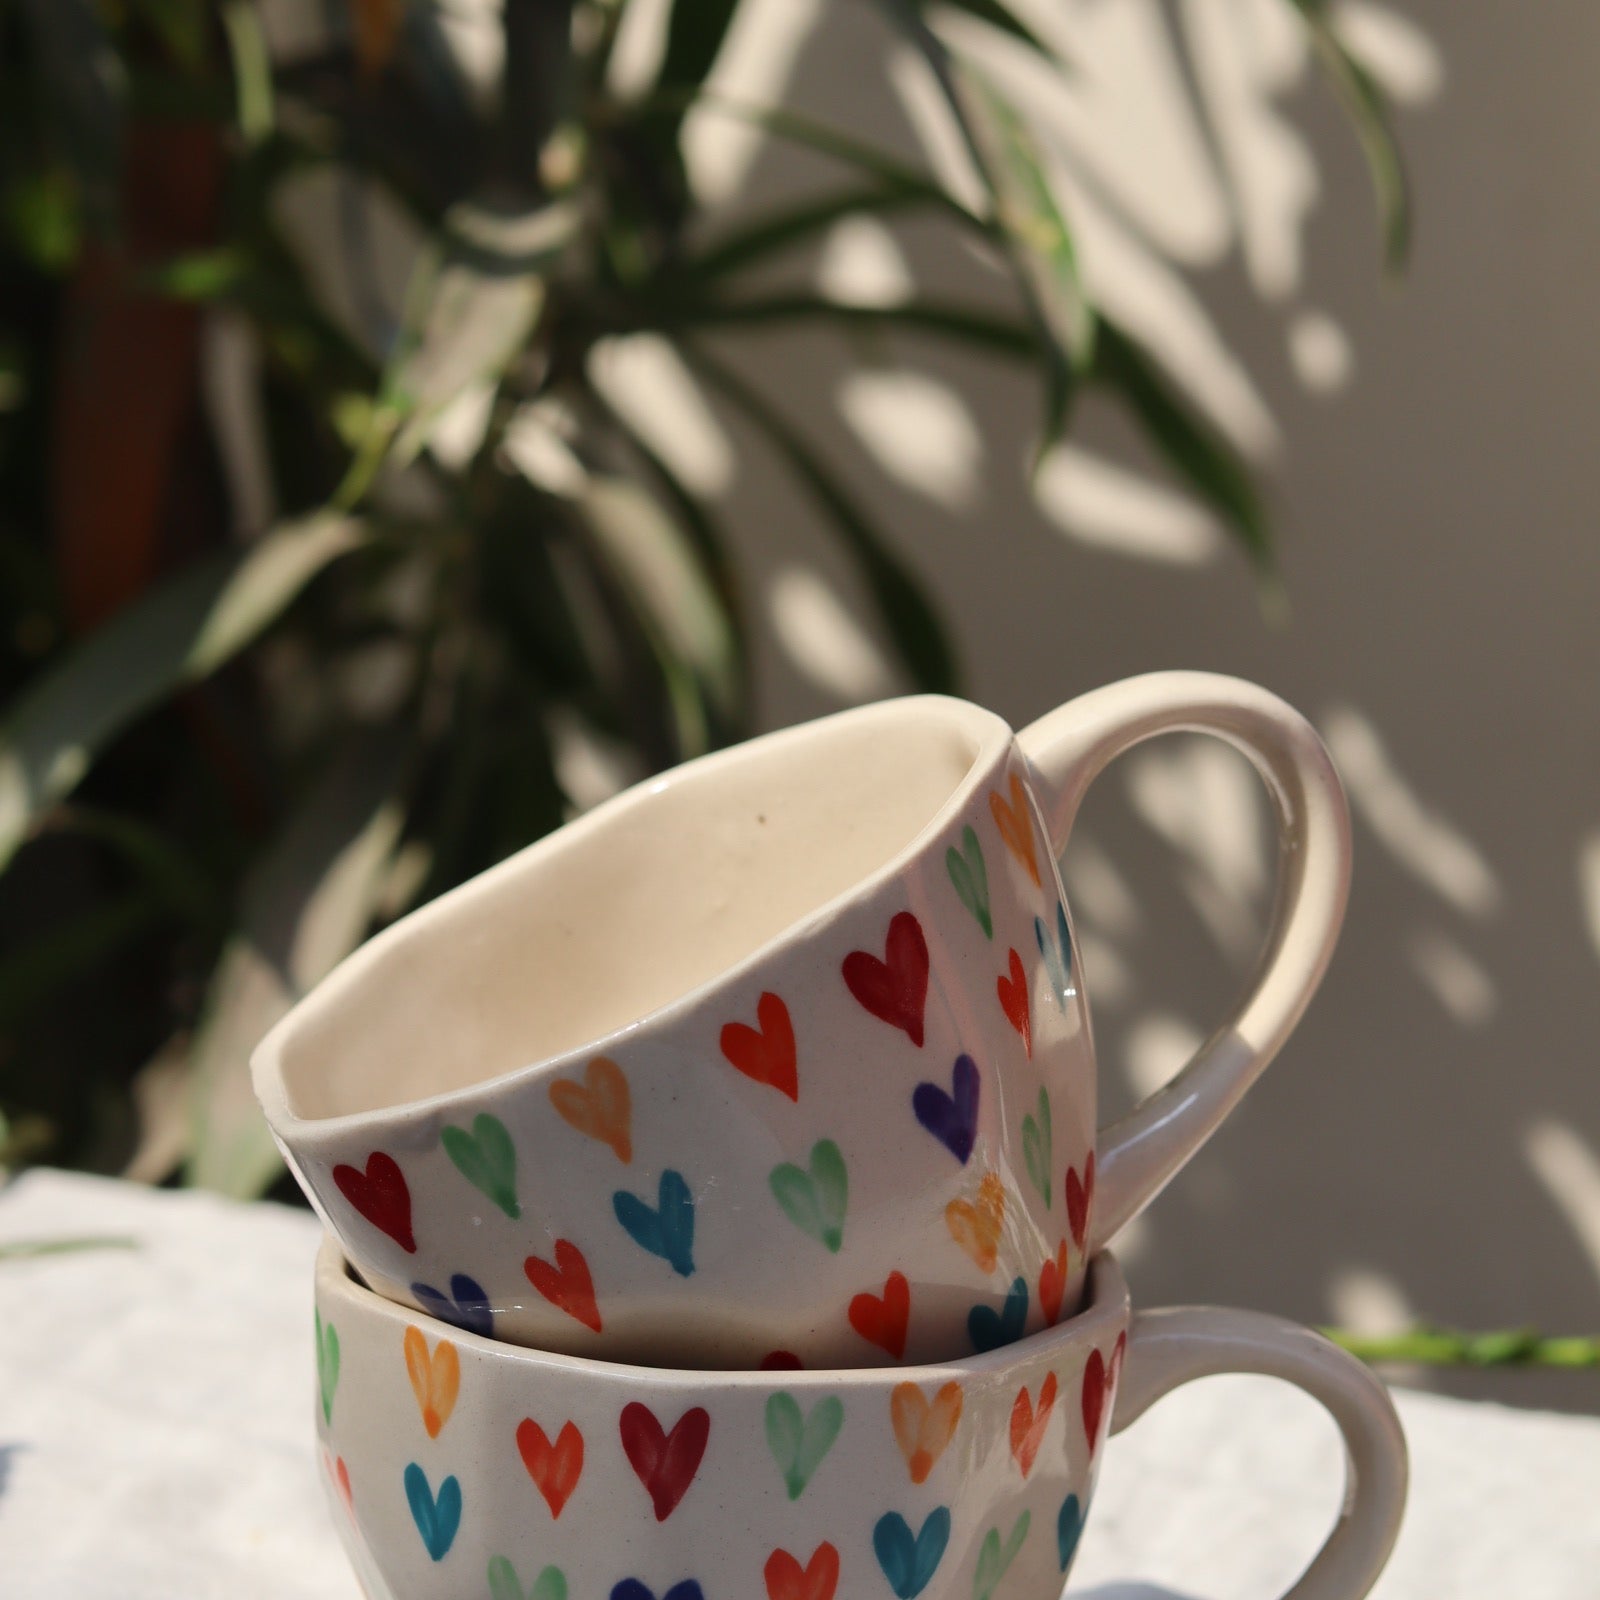 Colorful heart coffee mugs